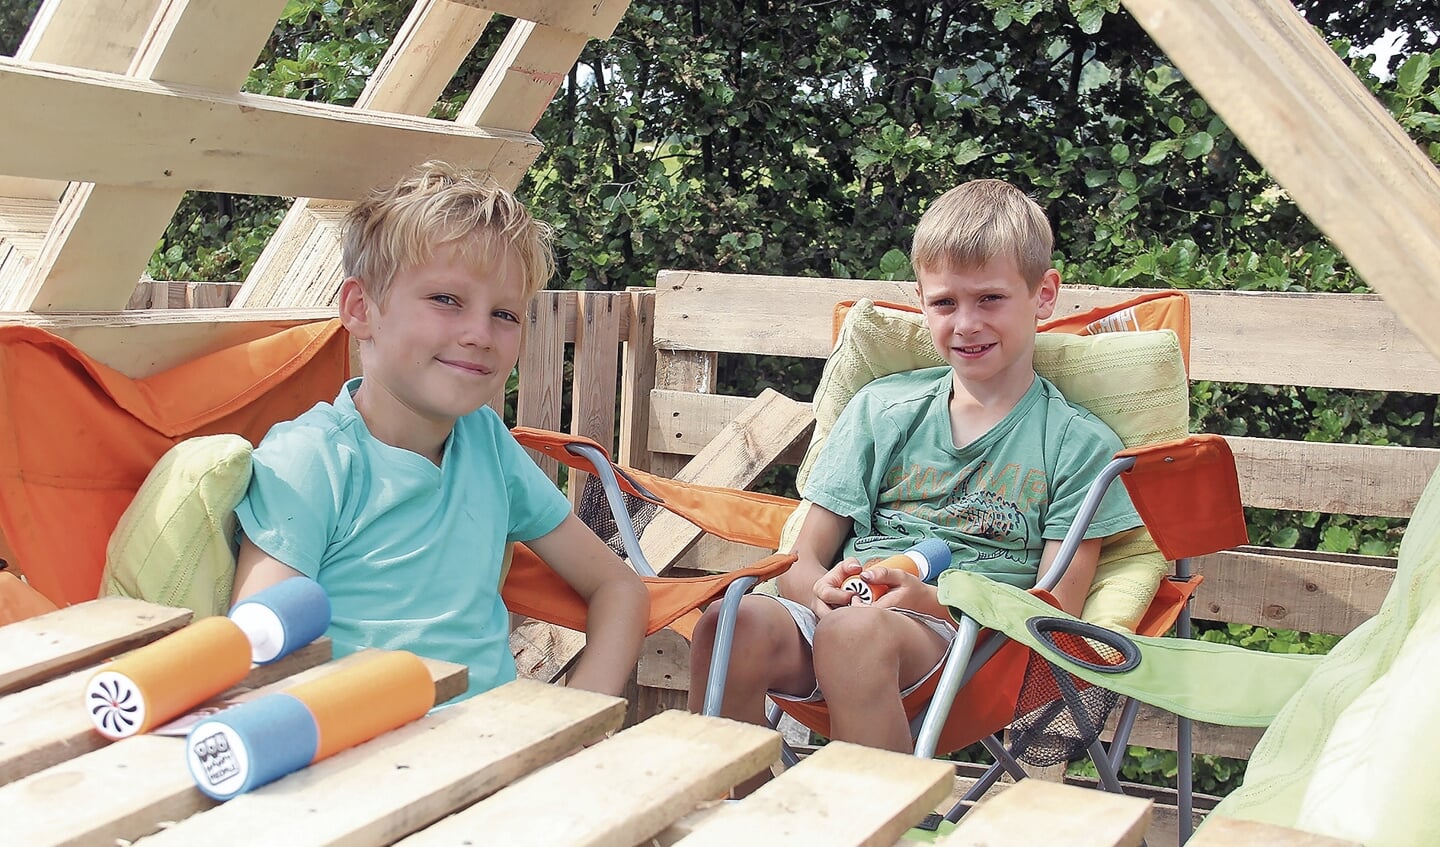 Berend Snel en Gabriël Post genietend op het balkon van hun hut. Bram Markus had ook meegebouwd. Hij was even naar huis.